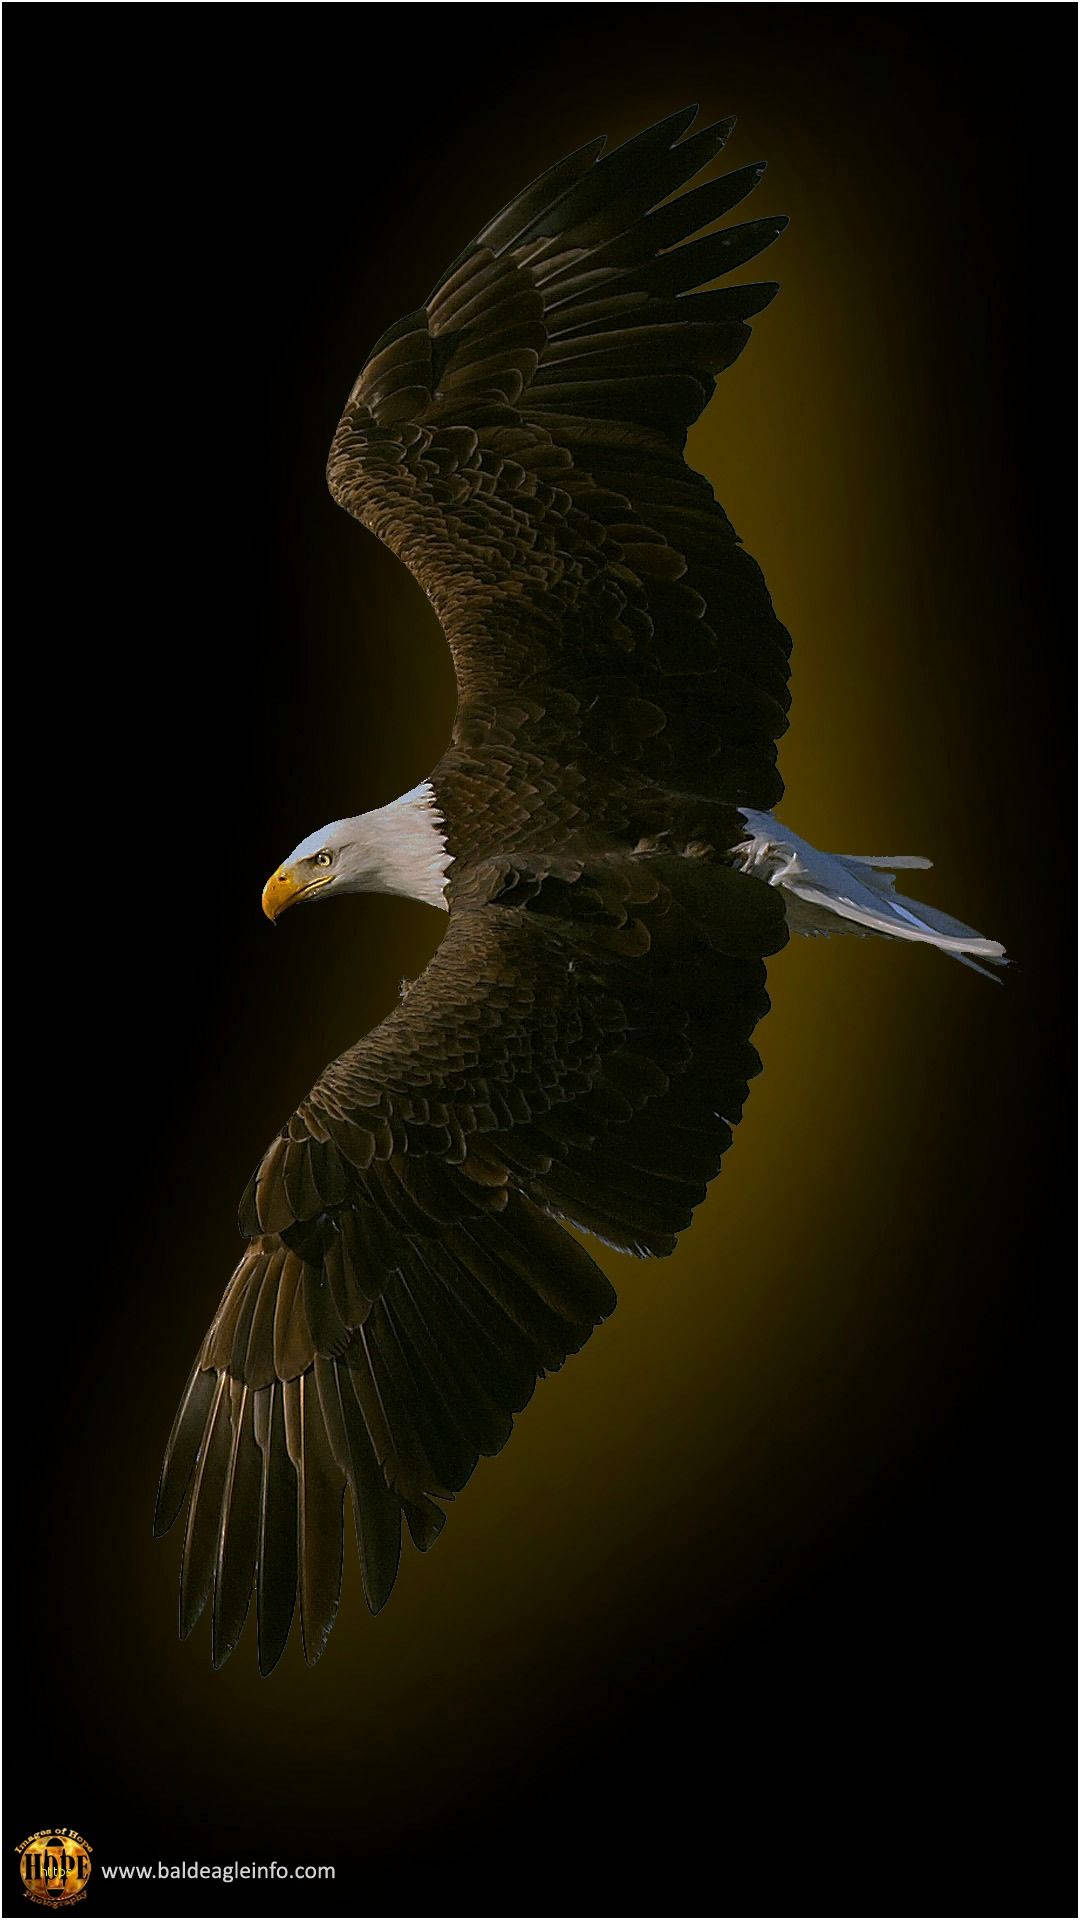 Fliegendesvogelsymbol Von Amerika Iphone Wallpaper. Wallpaper